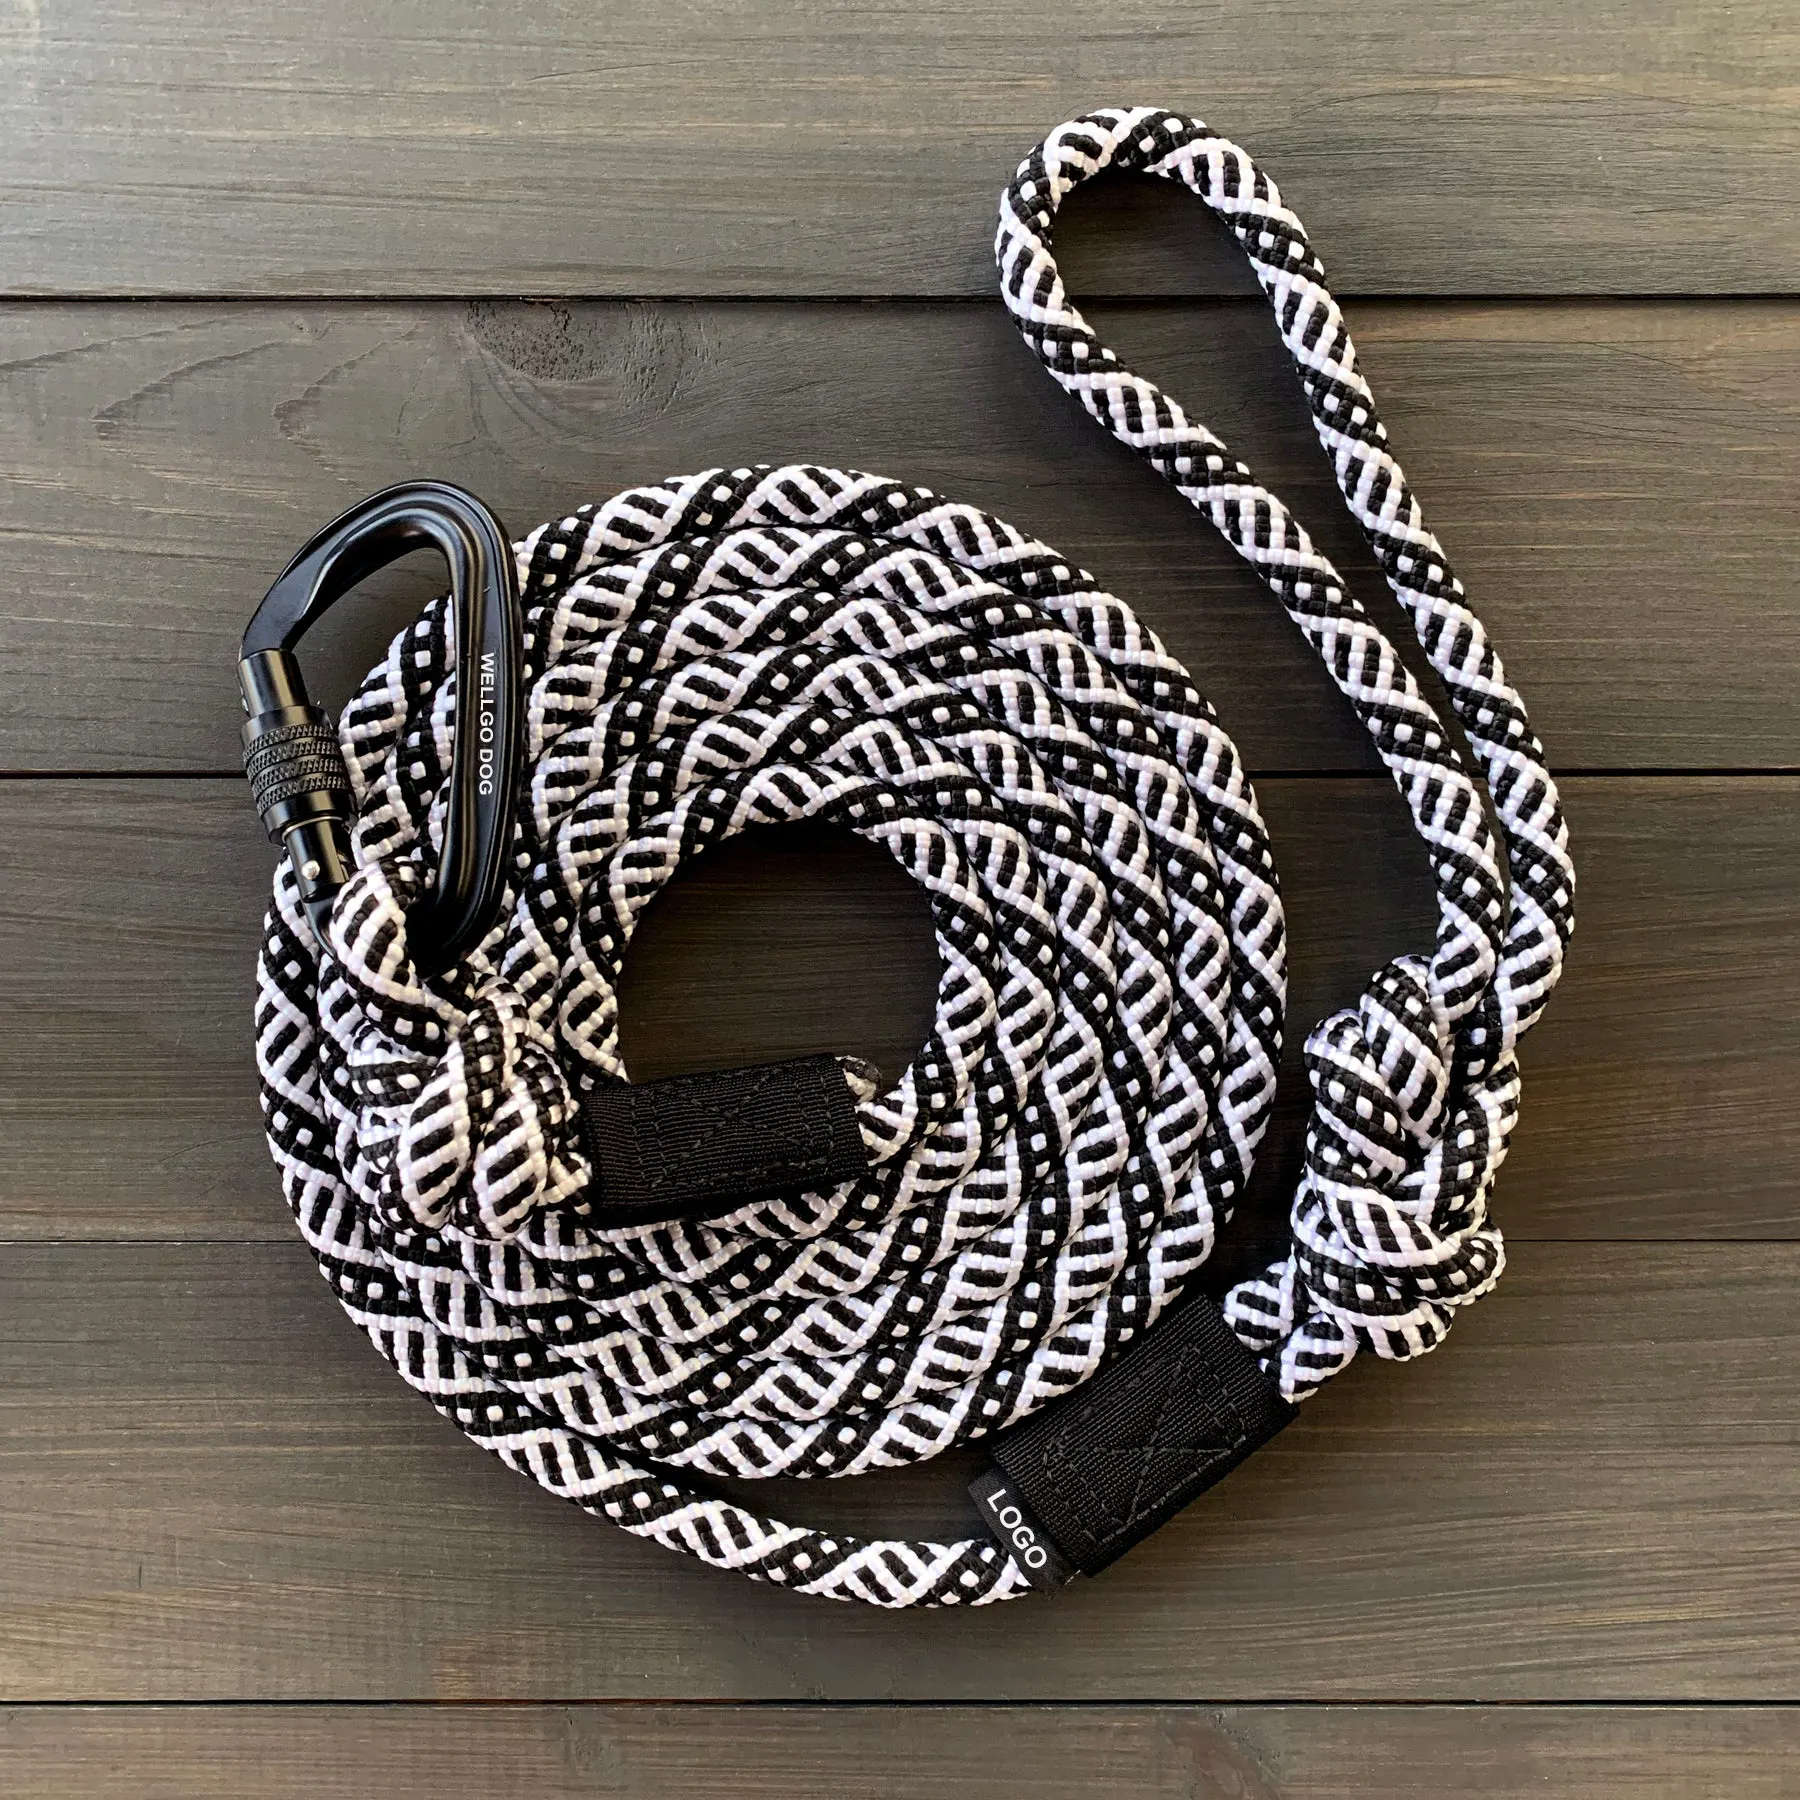 Grosir tali tali anjing reflektif anyaman nilon warna hitam dan putih dengan Carabiner aluminium pesawat